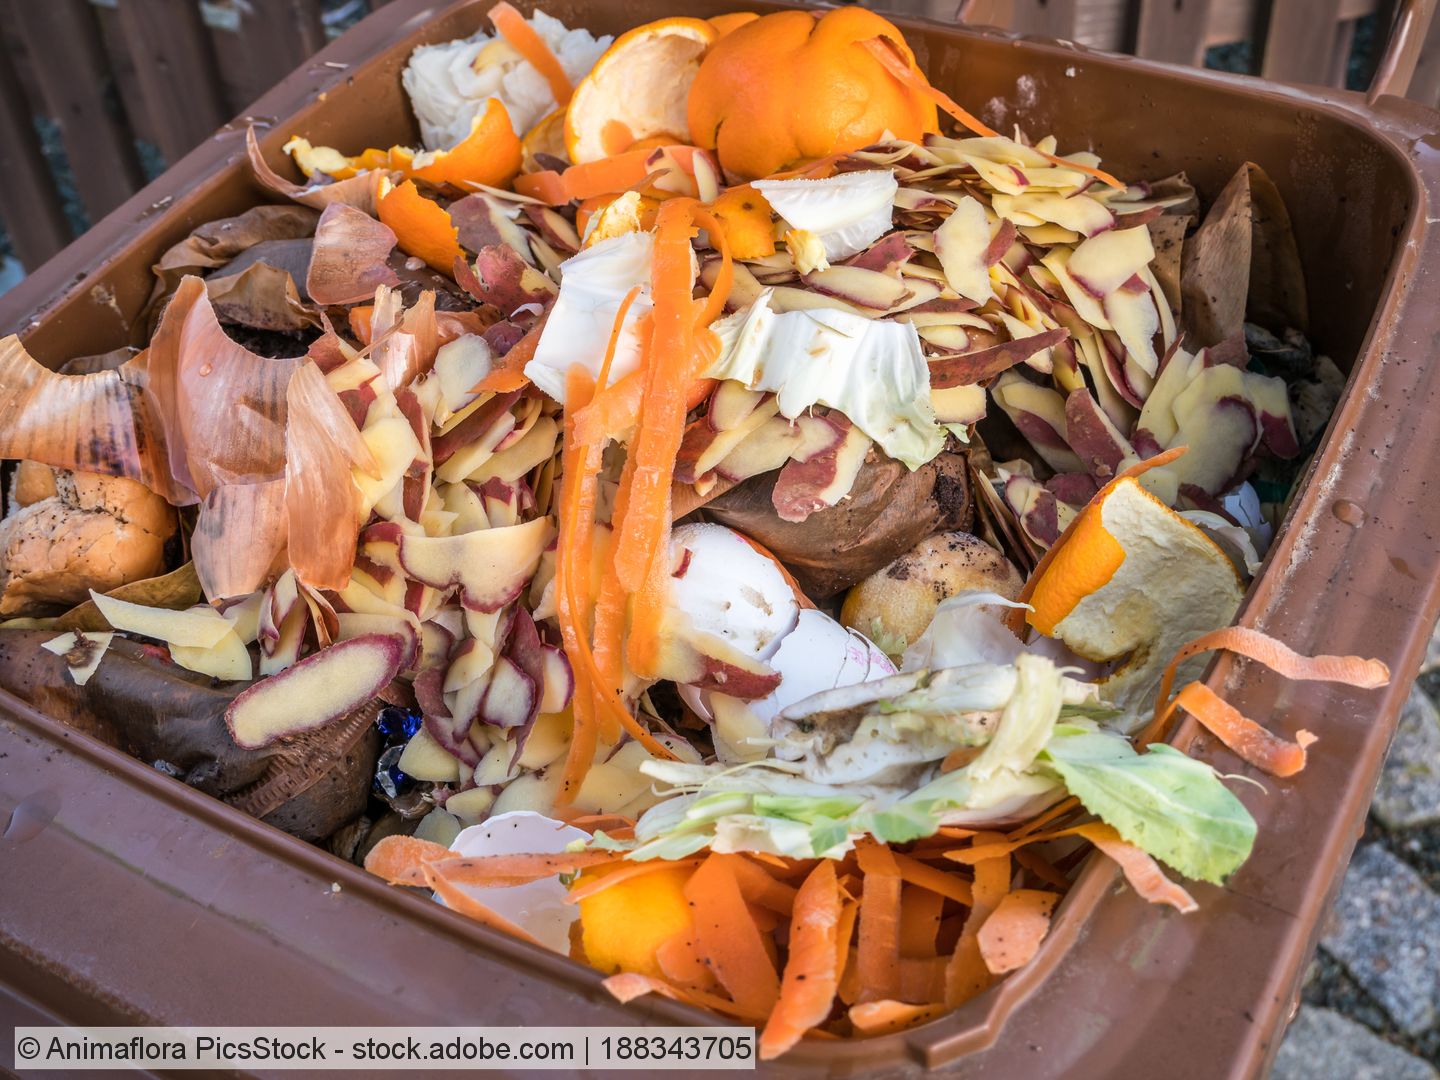 Höhere Bioabfallmenge sorgt für gestiegenes Müllaufkommen bei privaten Haushalten